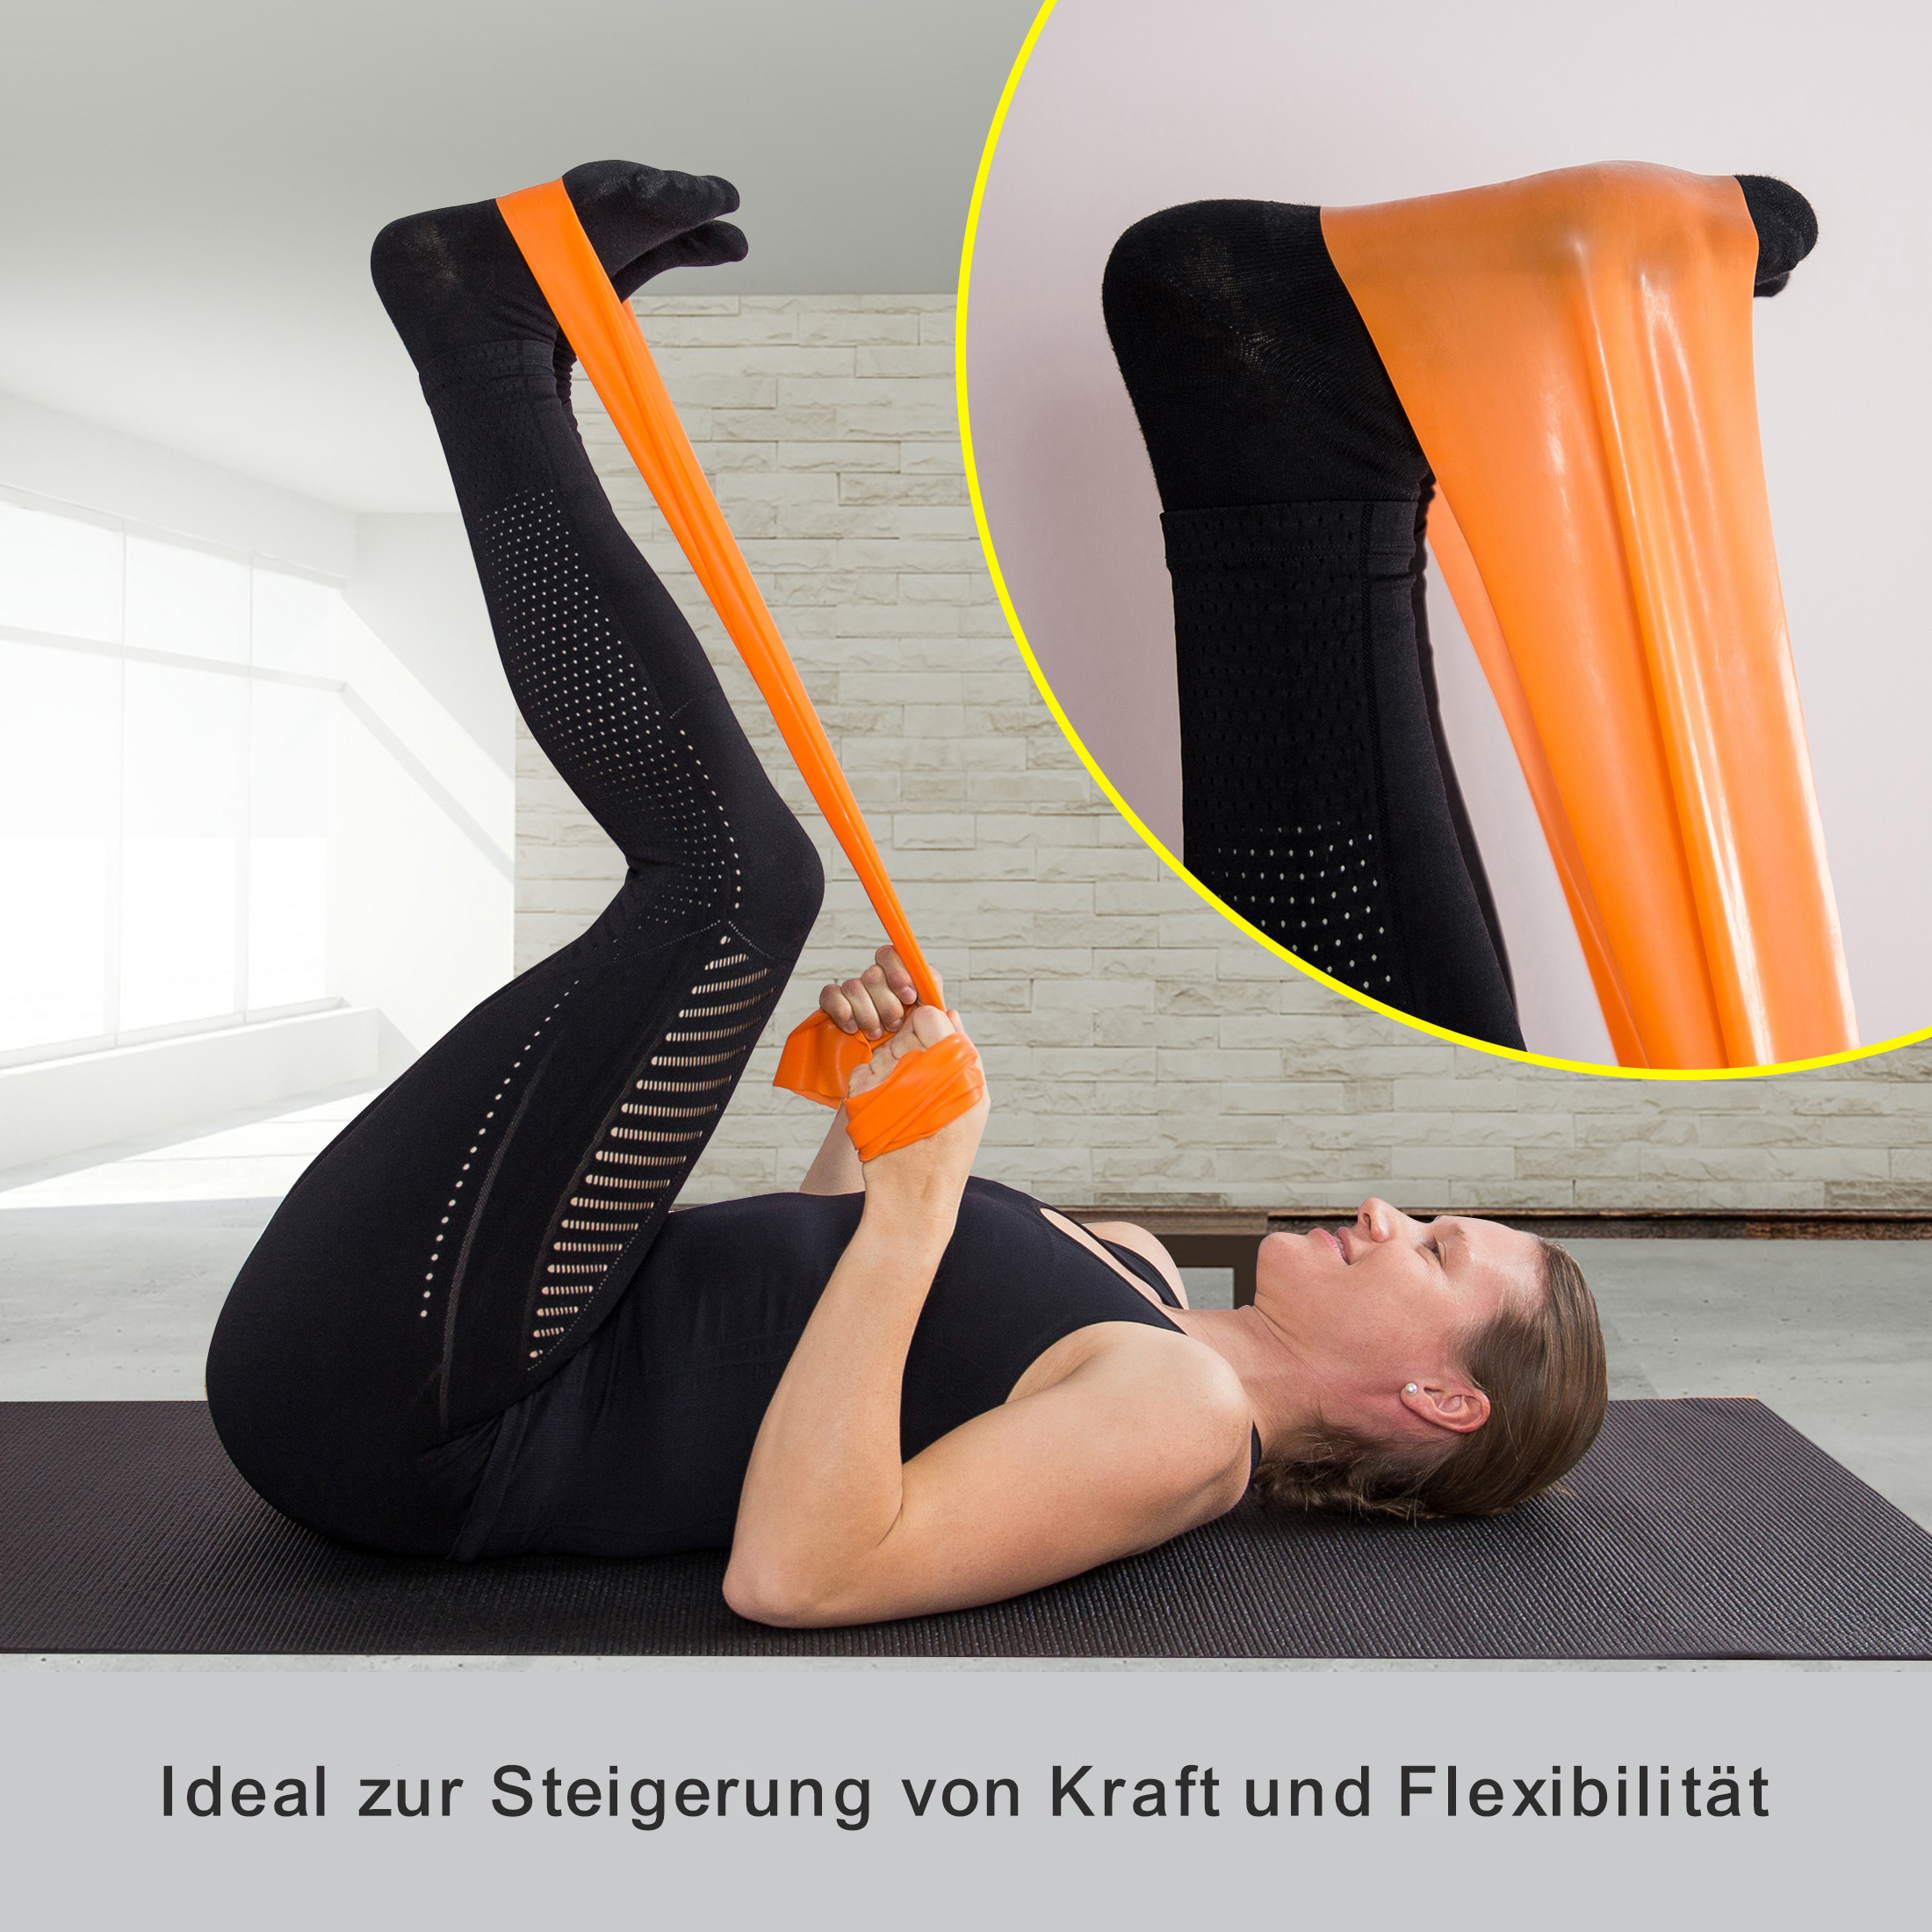 ZOOMYO elastisches mit Stretchband, für Krafttraining zuhause Widerstand, Trainingsband Orange Fitnessband unterschiedlichem Elastische